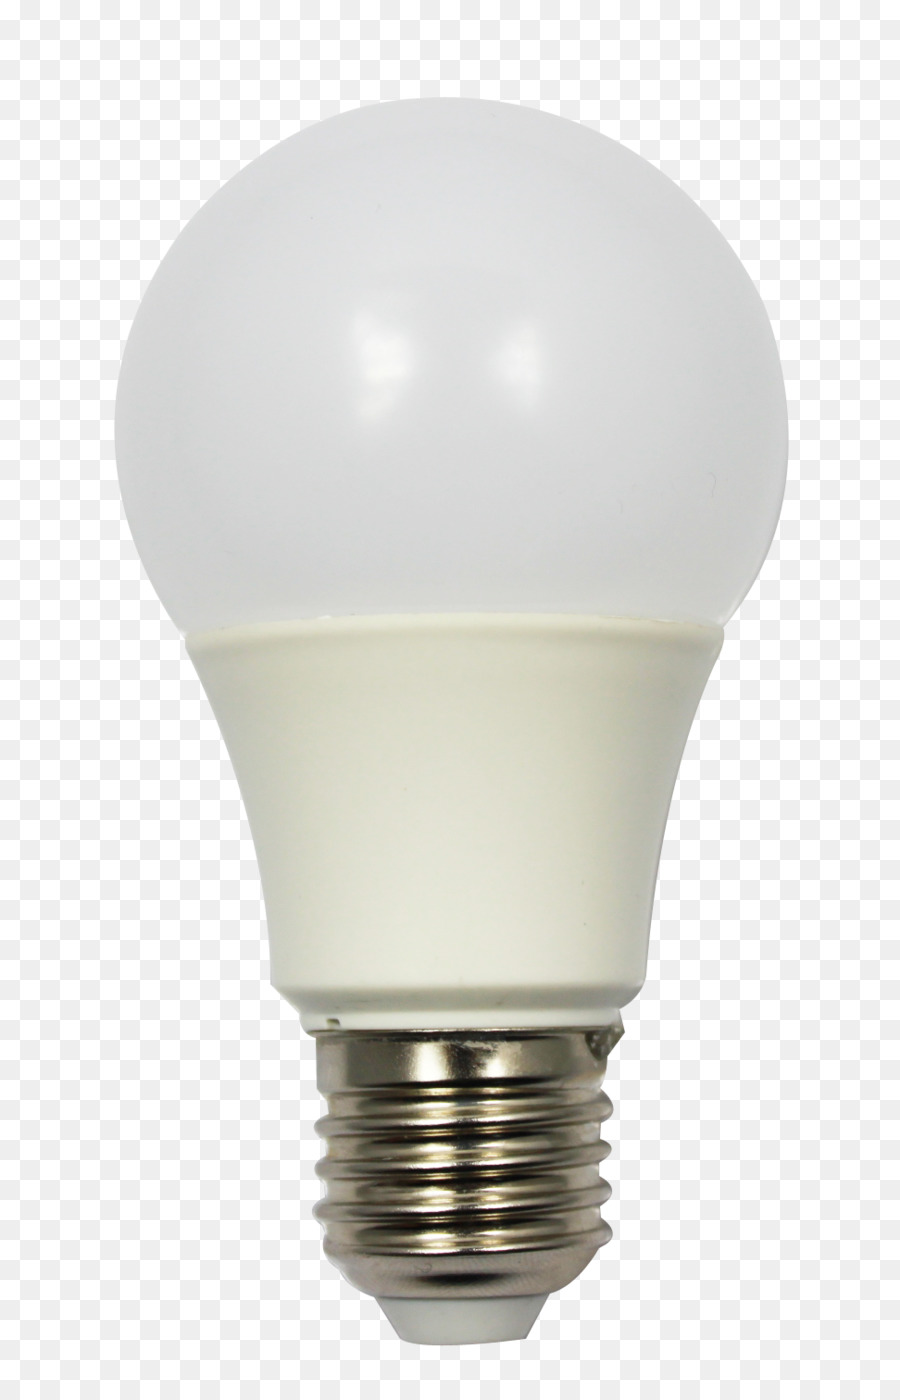 Incandescent light bulb LED lamp Light-emitting diode - bulb png download - 972*1498 - Free Transparent  Light png Download.